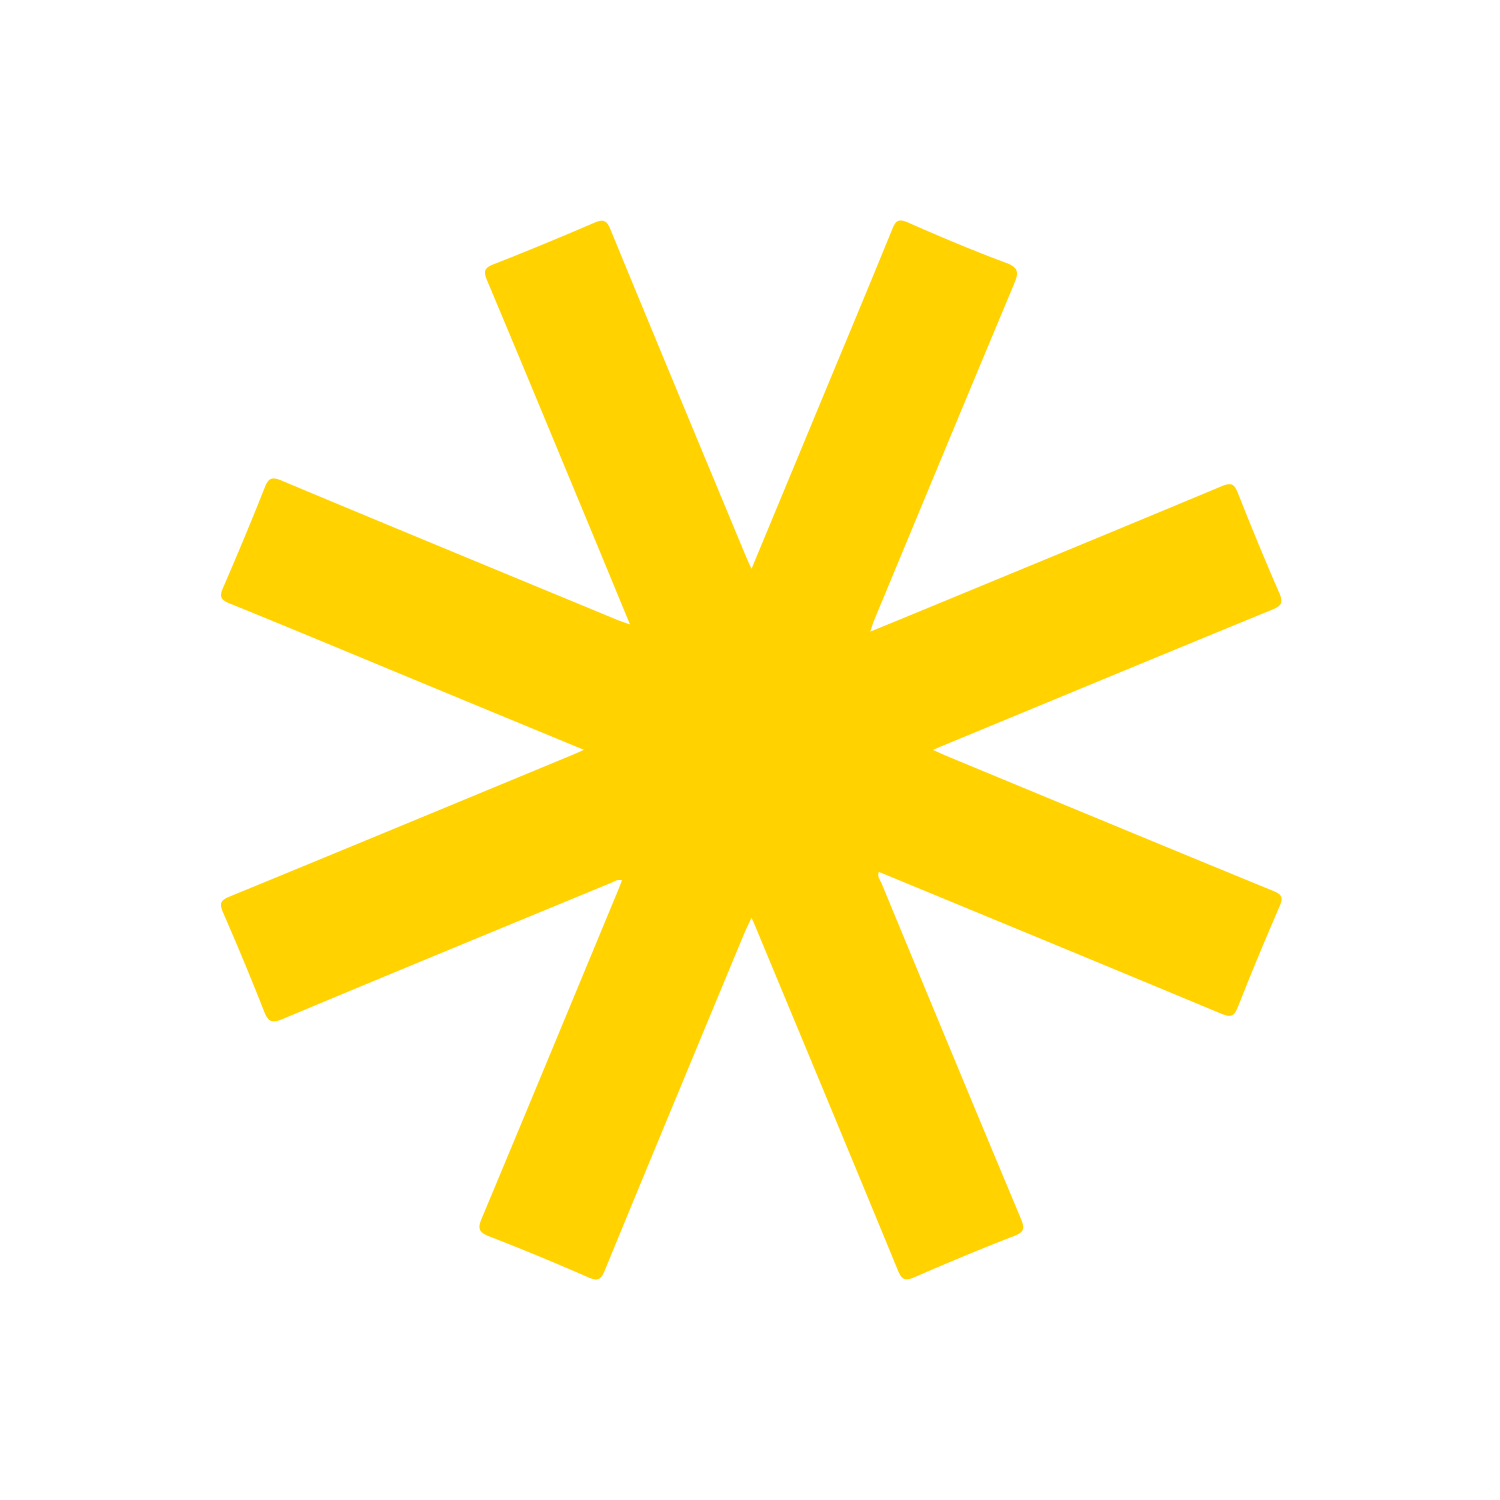 Grafika. Żółta ośmioramienna gwiazda na białym tle.